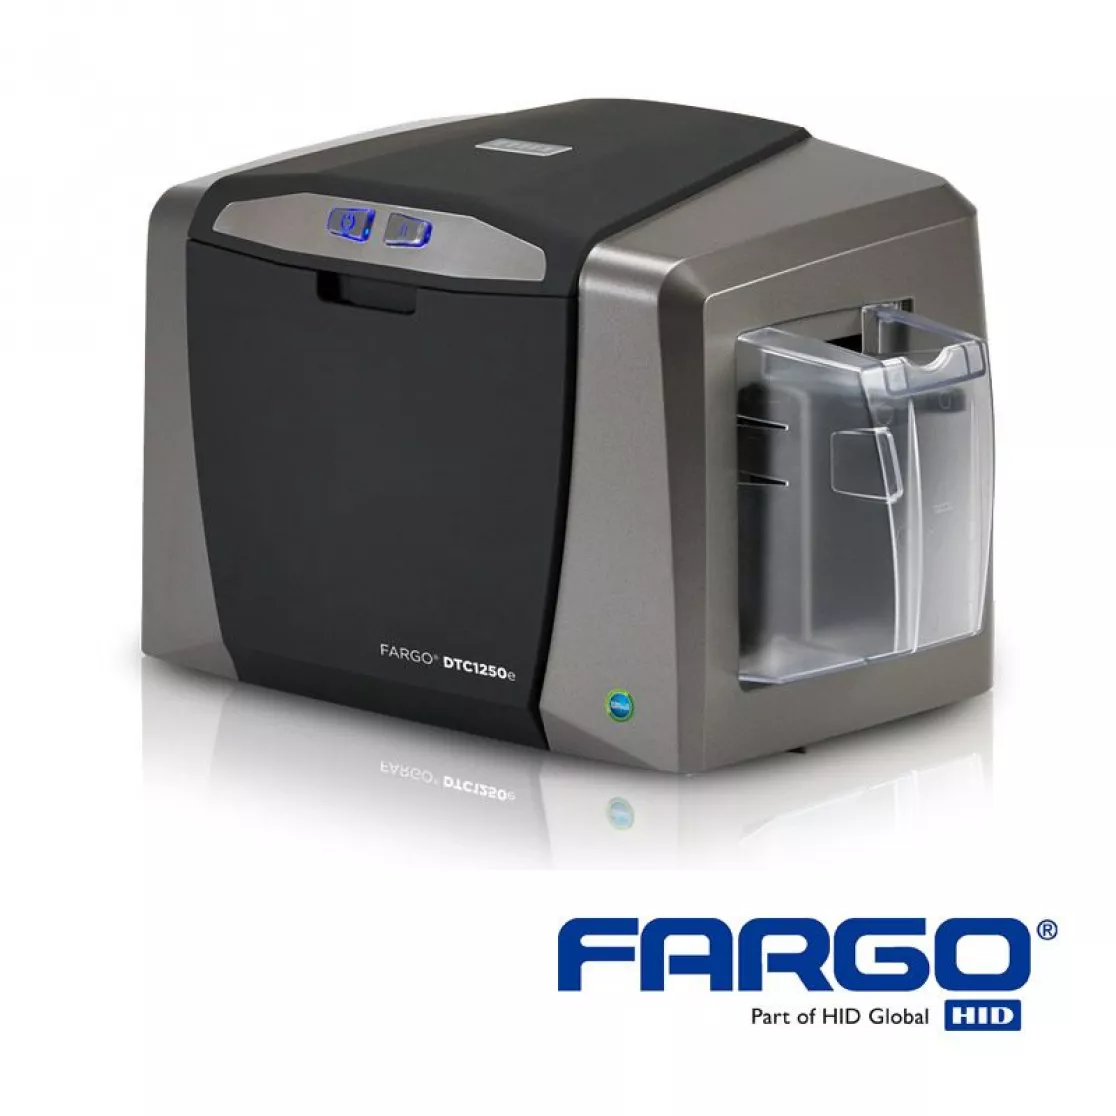 HID Fargo DTC1250e Duo Card printer